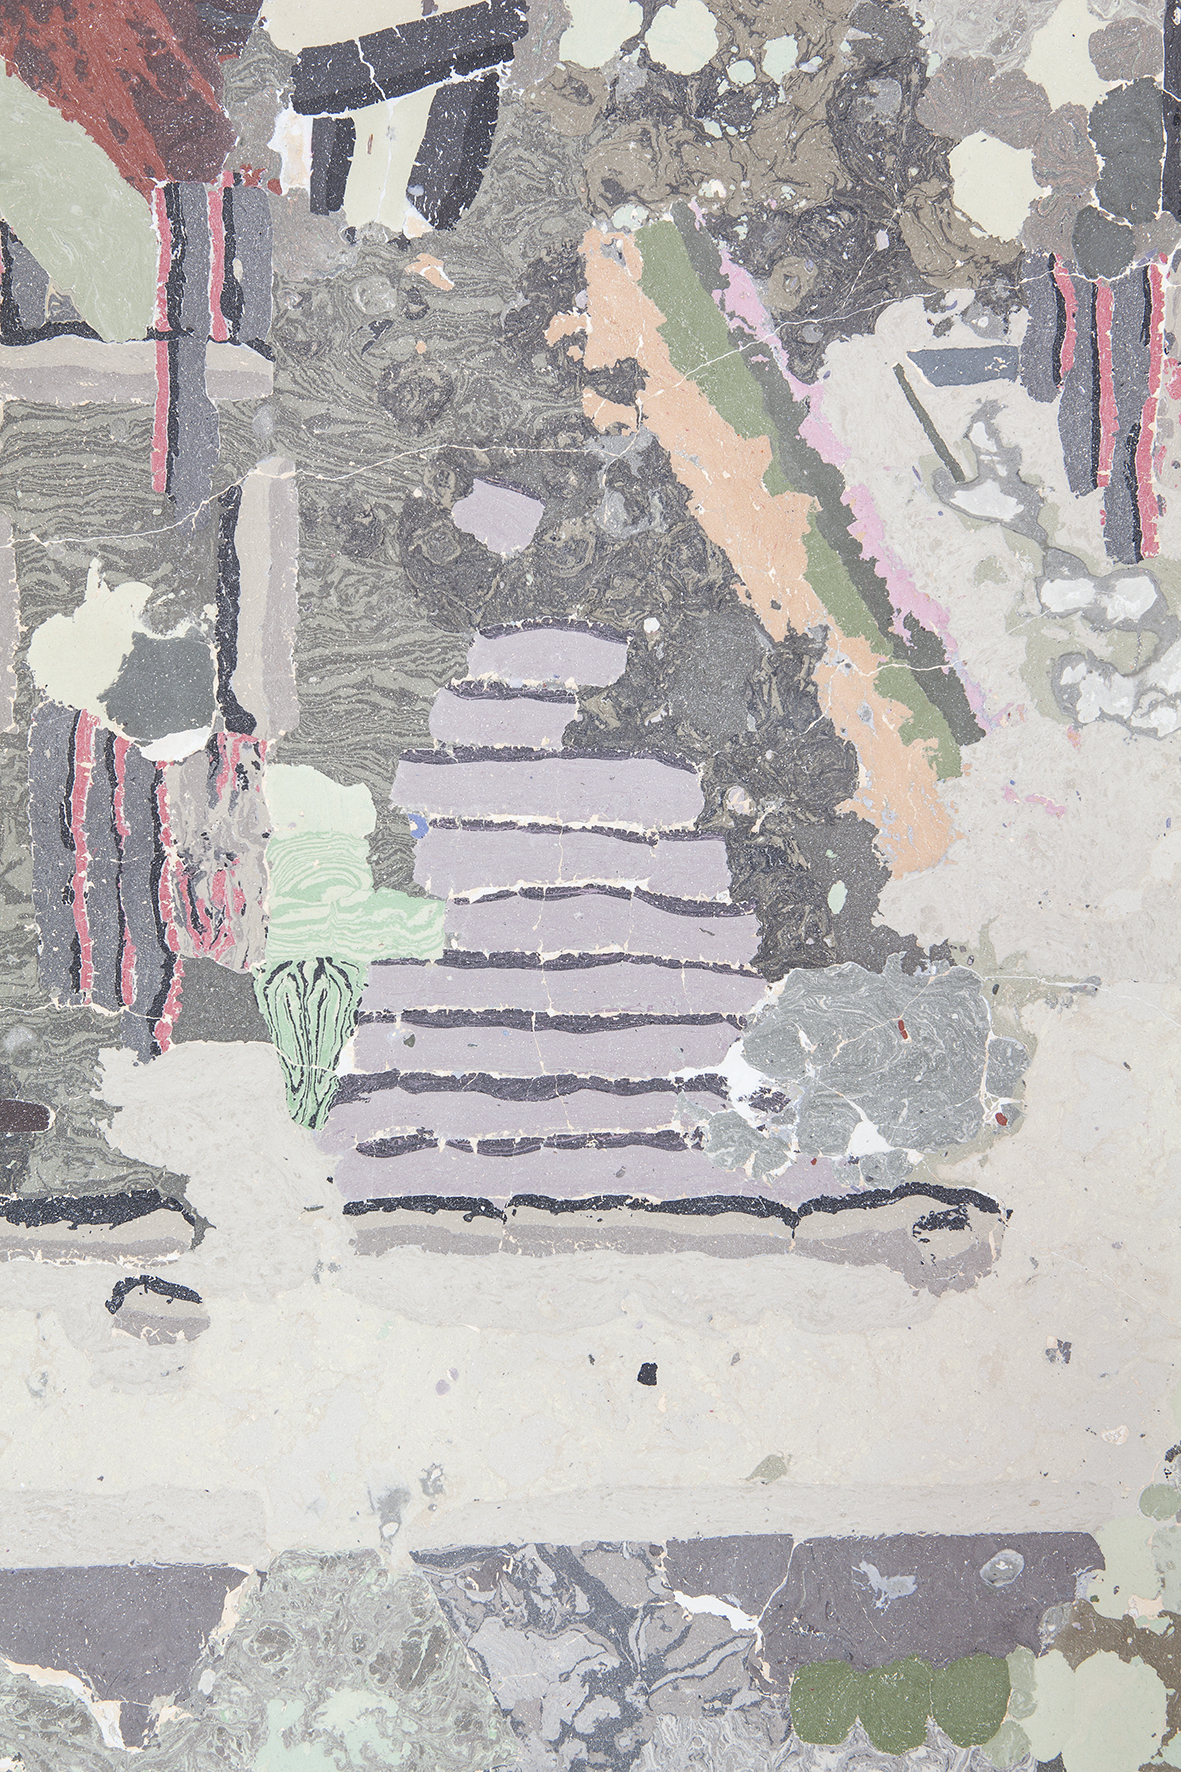 Heti Prack, Altes Licht (detail), 2021, 113 x 85 cm, Gypsum, pigments, bone glue